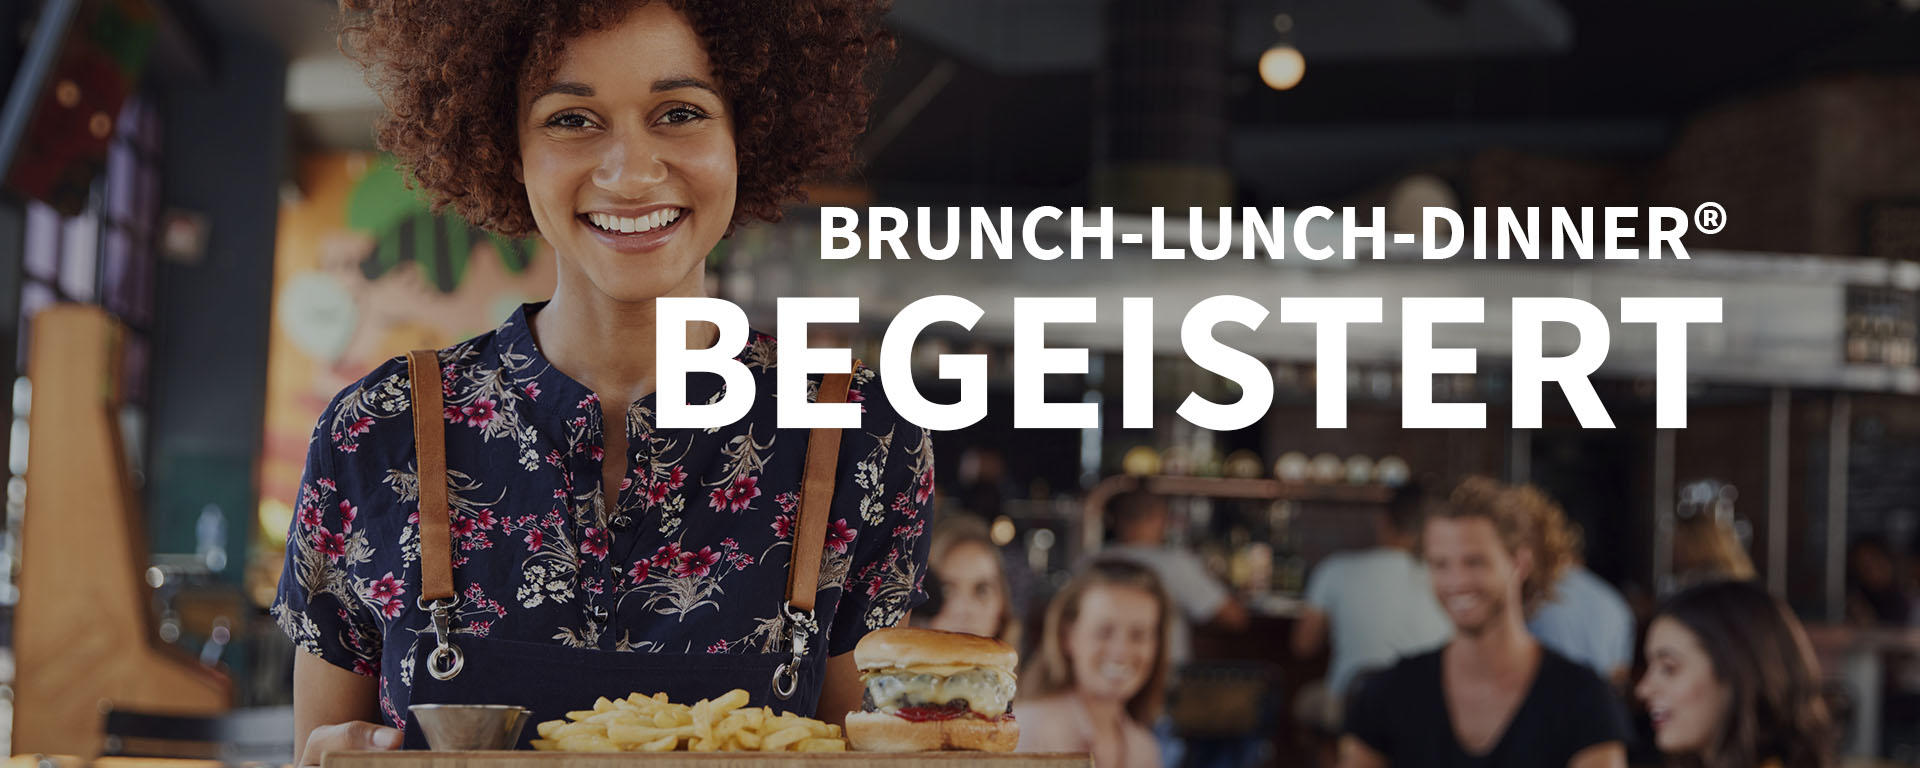 Bilder BRUNCH-LUNCH-DINNER® - Onlinemarketing für Hotels & Restaurants